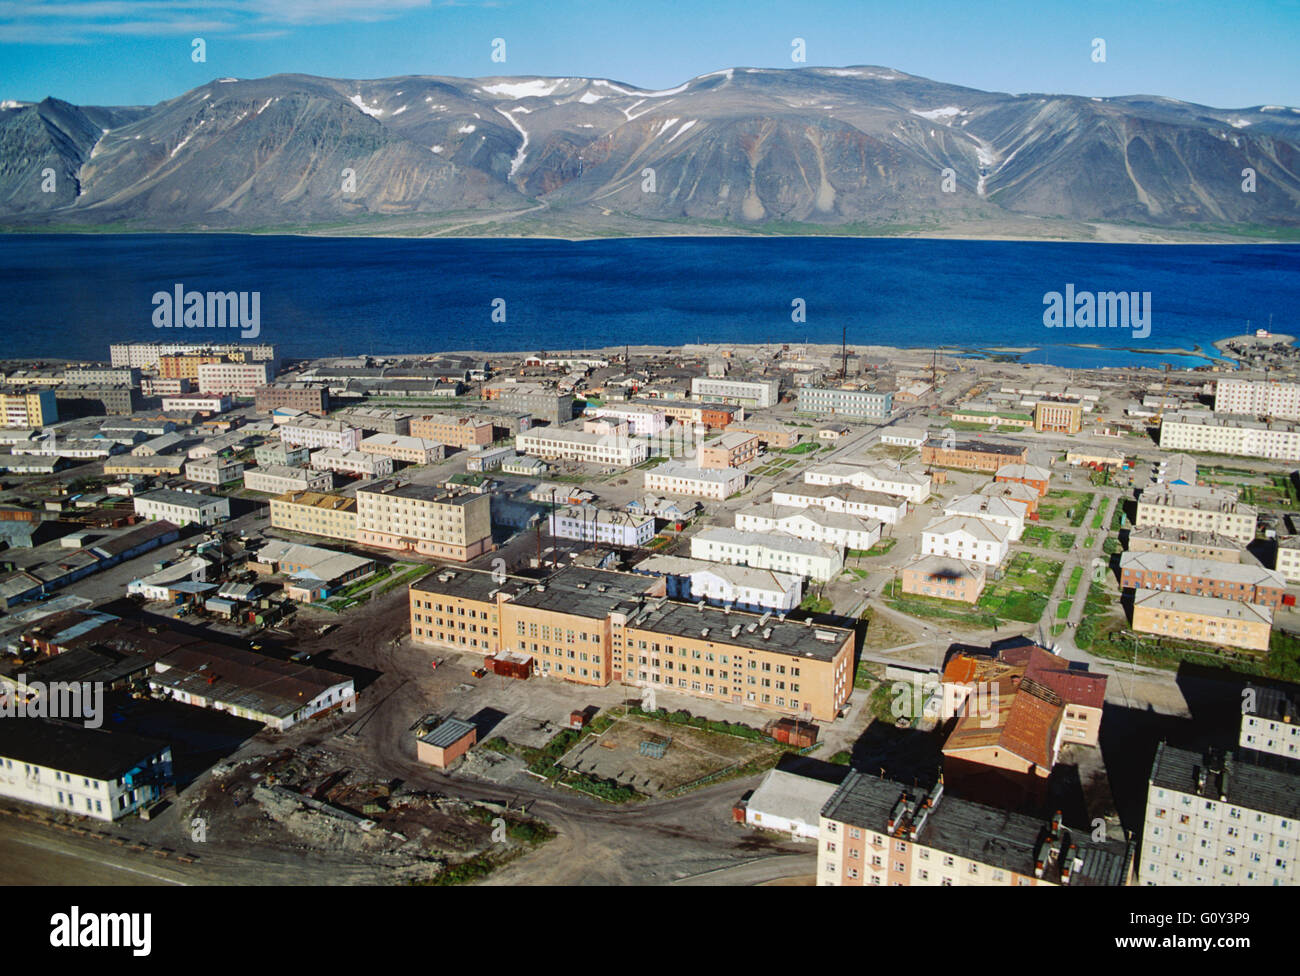 Vue aérienne de la ville portuaire de Sibérie ; Egvekinot Région de Magadan, Mer de Béring ; Fédération de Russie ; ex-Union soviétique URSS Banque D'Images